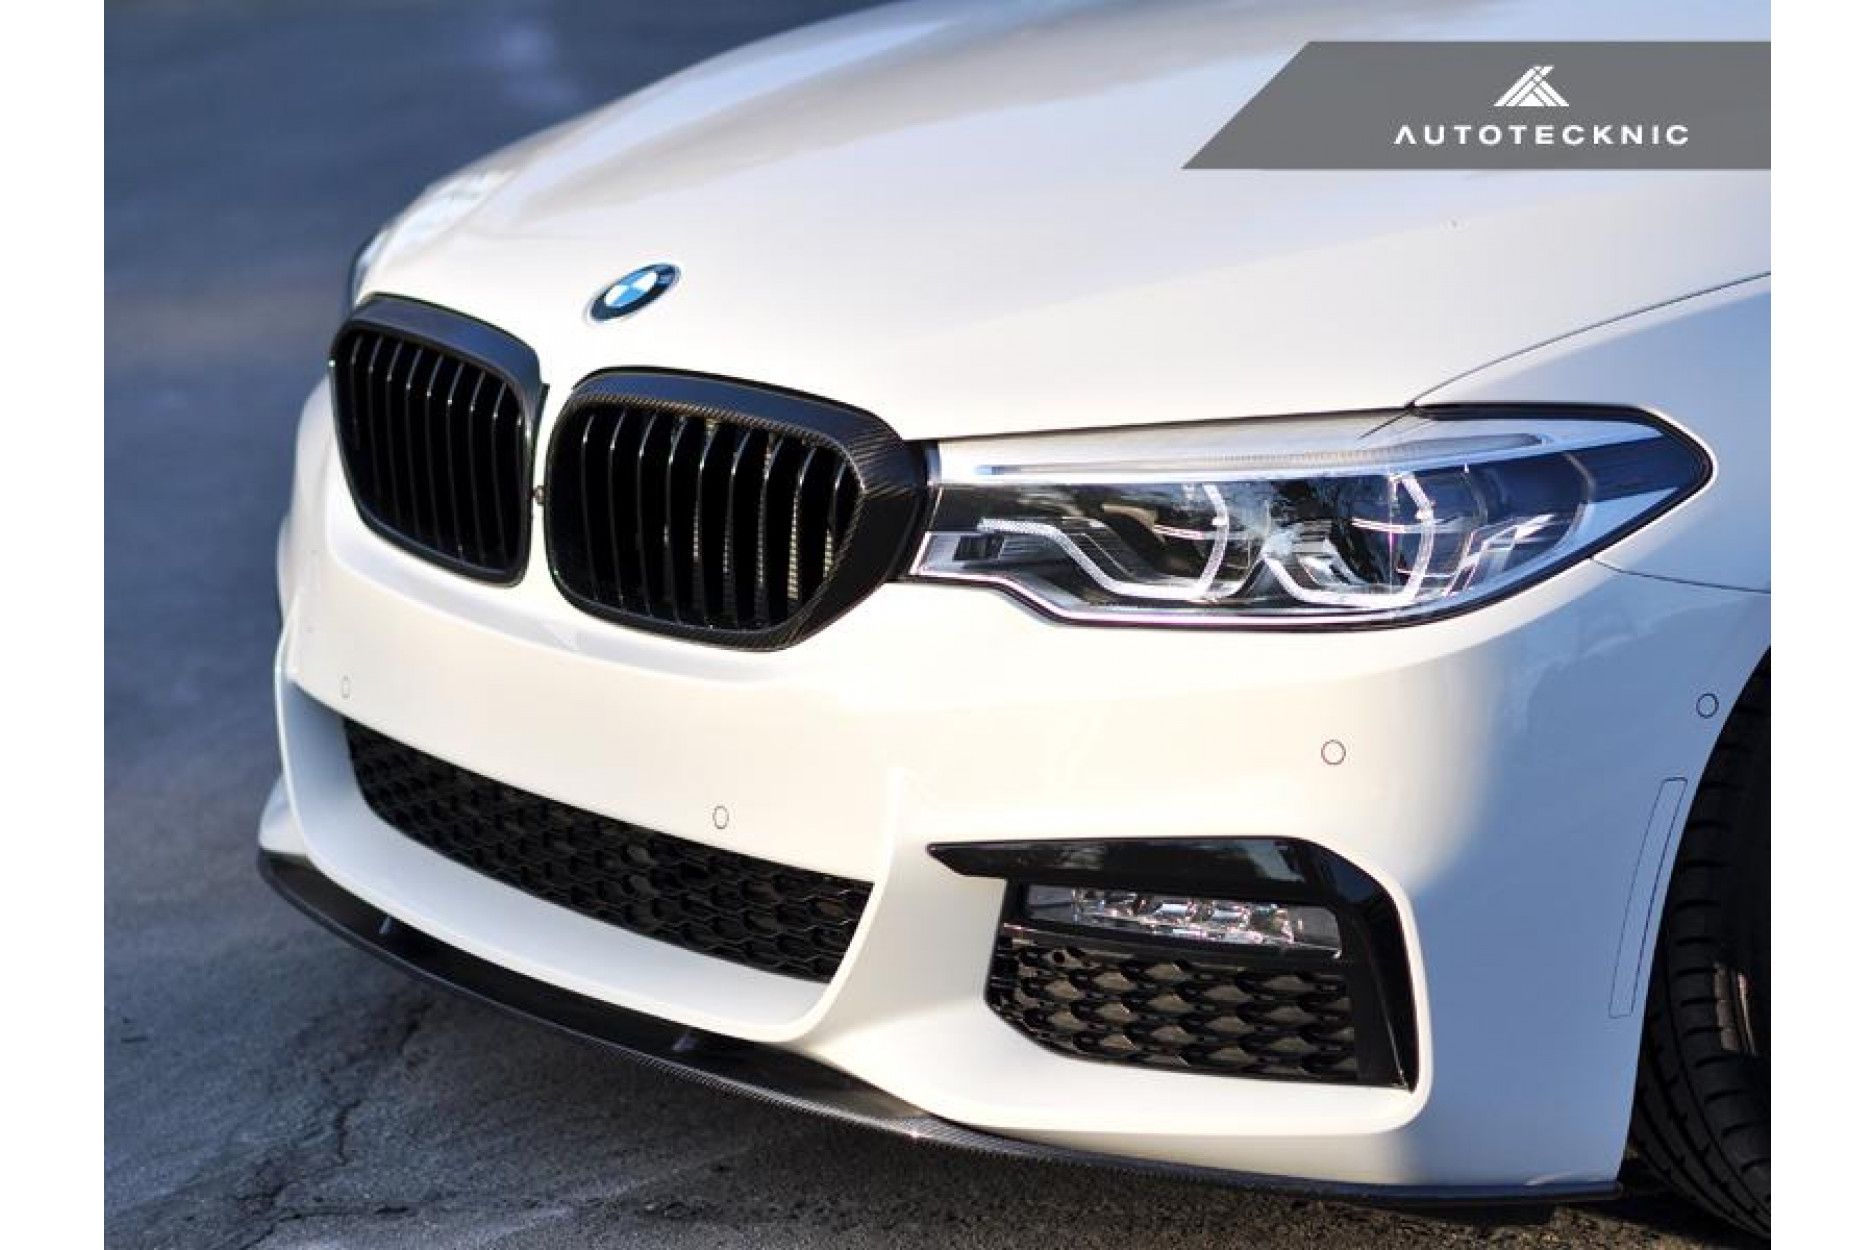 AutoTecknic Carbon Schaltknauf Cover für BMW - online kaufen bei CFD